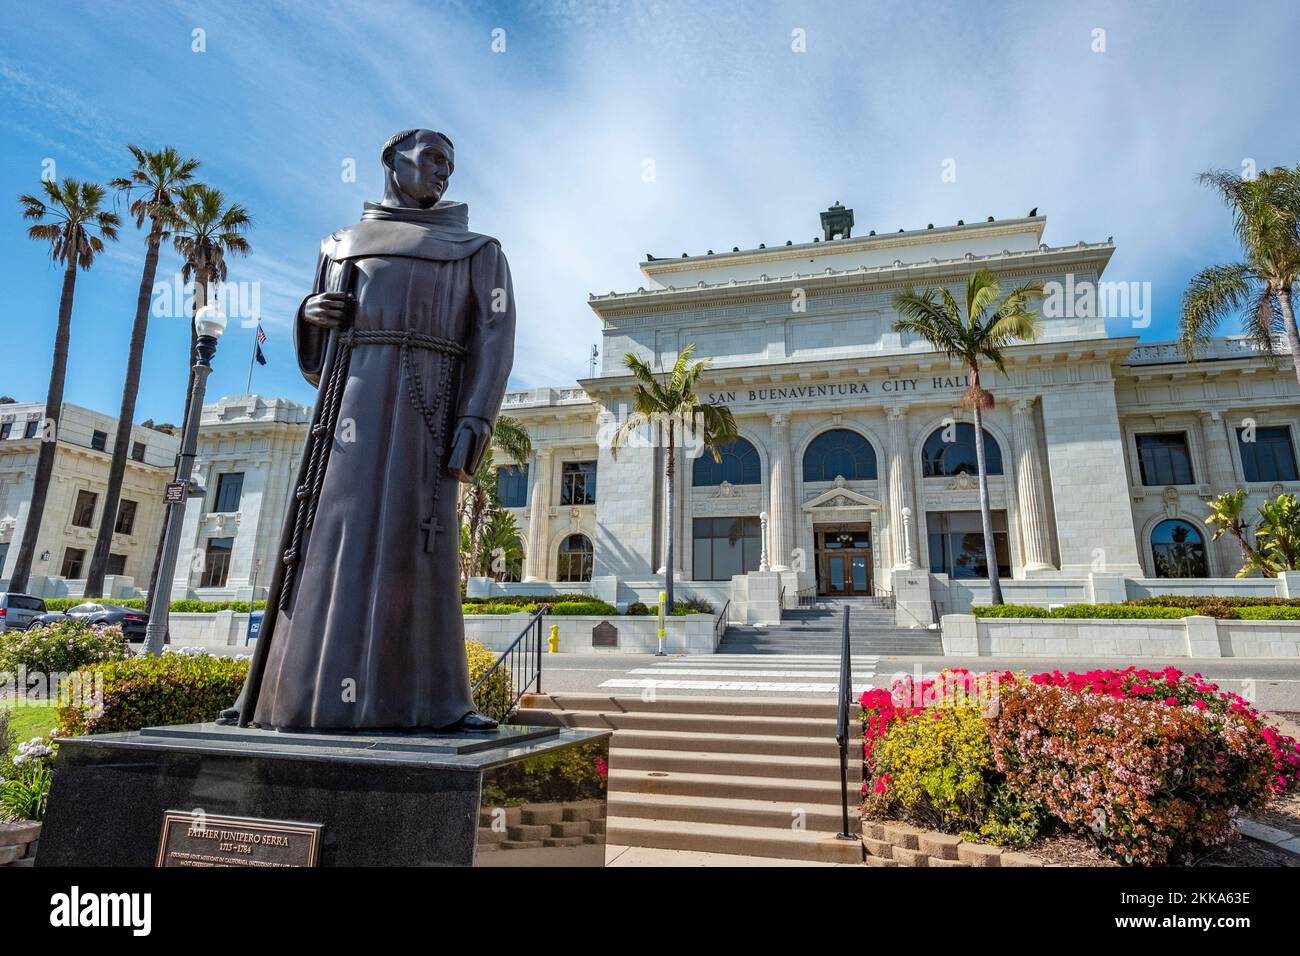 Ventura, USA - April 24, 2019: Ventura City Hall building with Father Junipero Serra statue in front, USA. Stock Photo